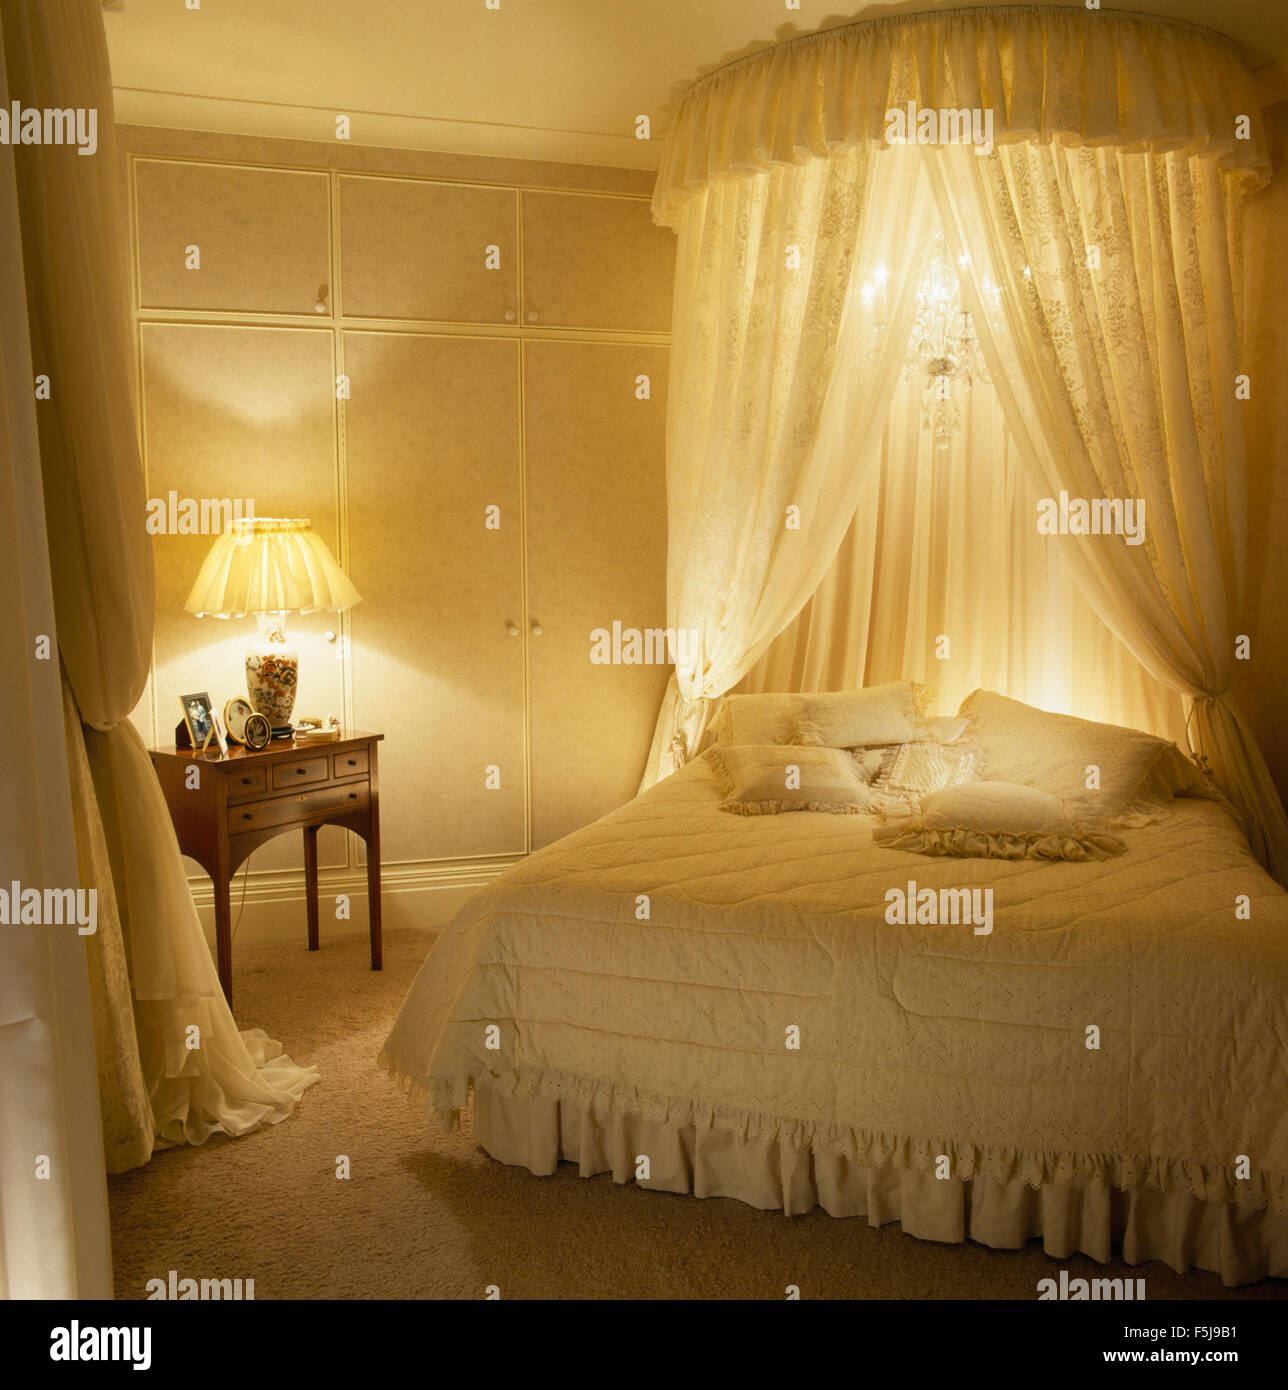 Coronet mit Gardinen und kleiner Kronleuchter über Bett in einem 80er Jahre  Schlafzimmer mit brennenden Lampen Stockfotografie - Alamy